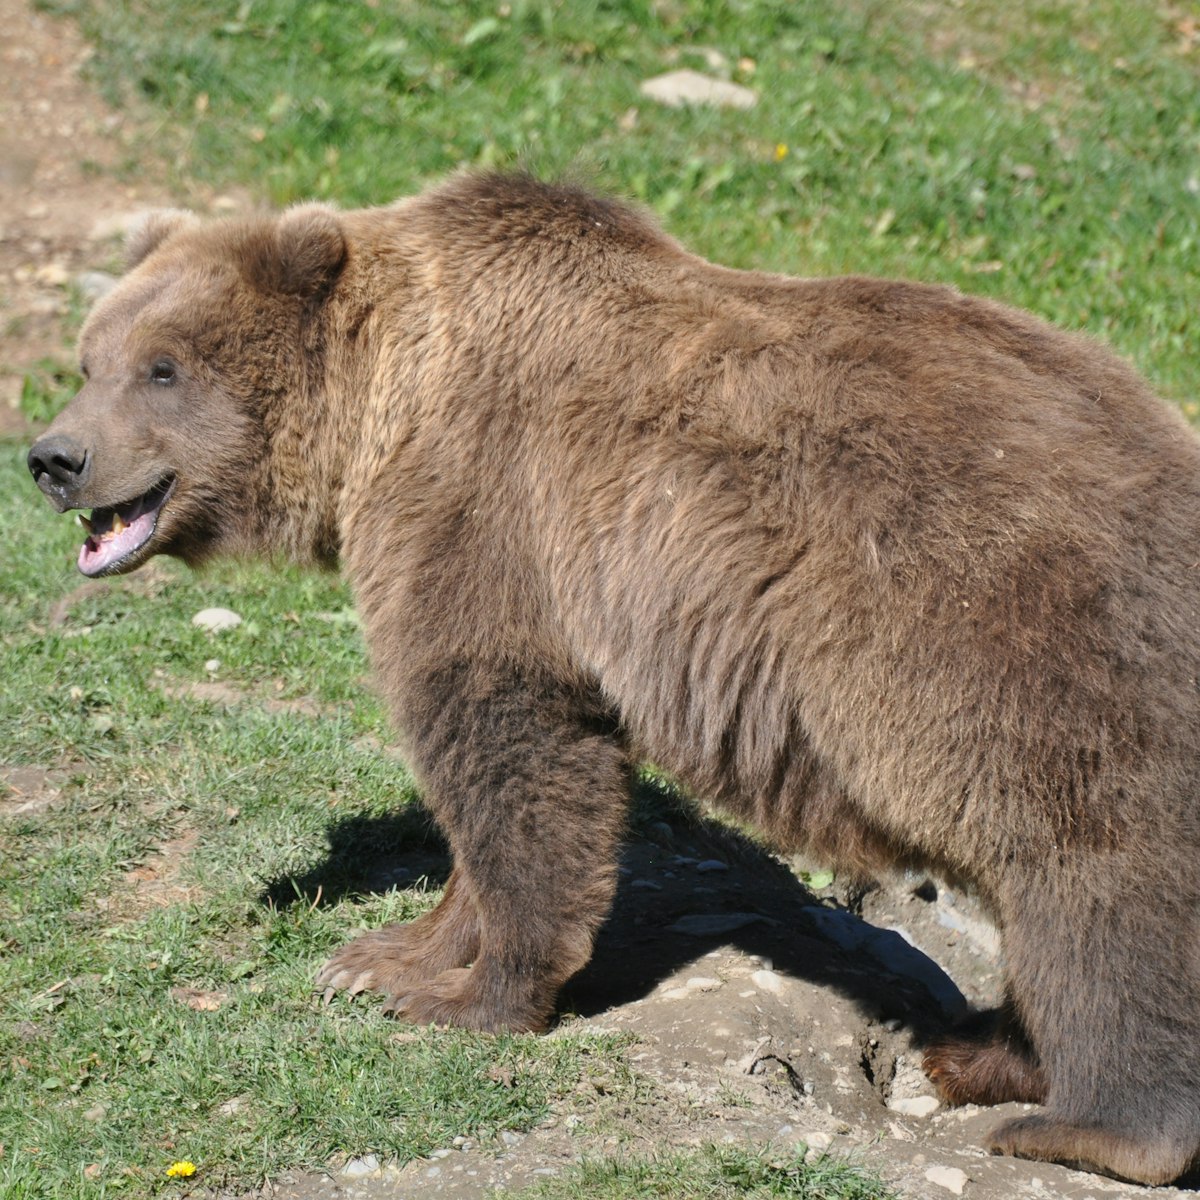 Alaska Zoo